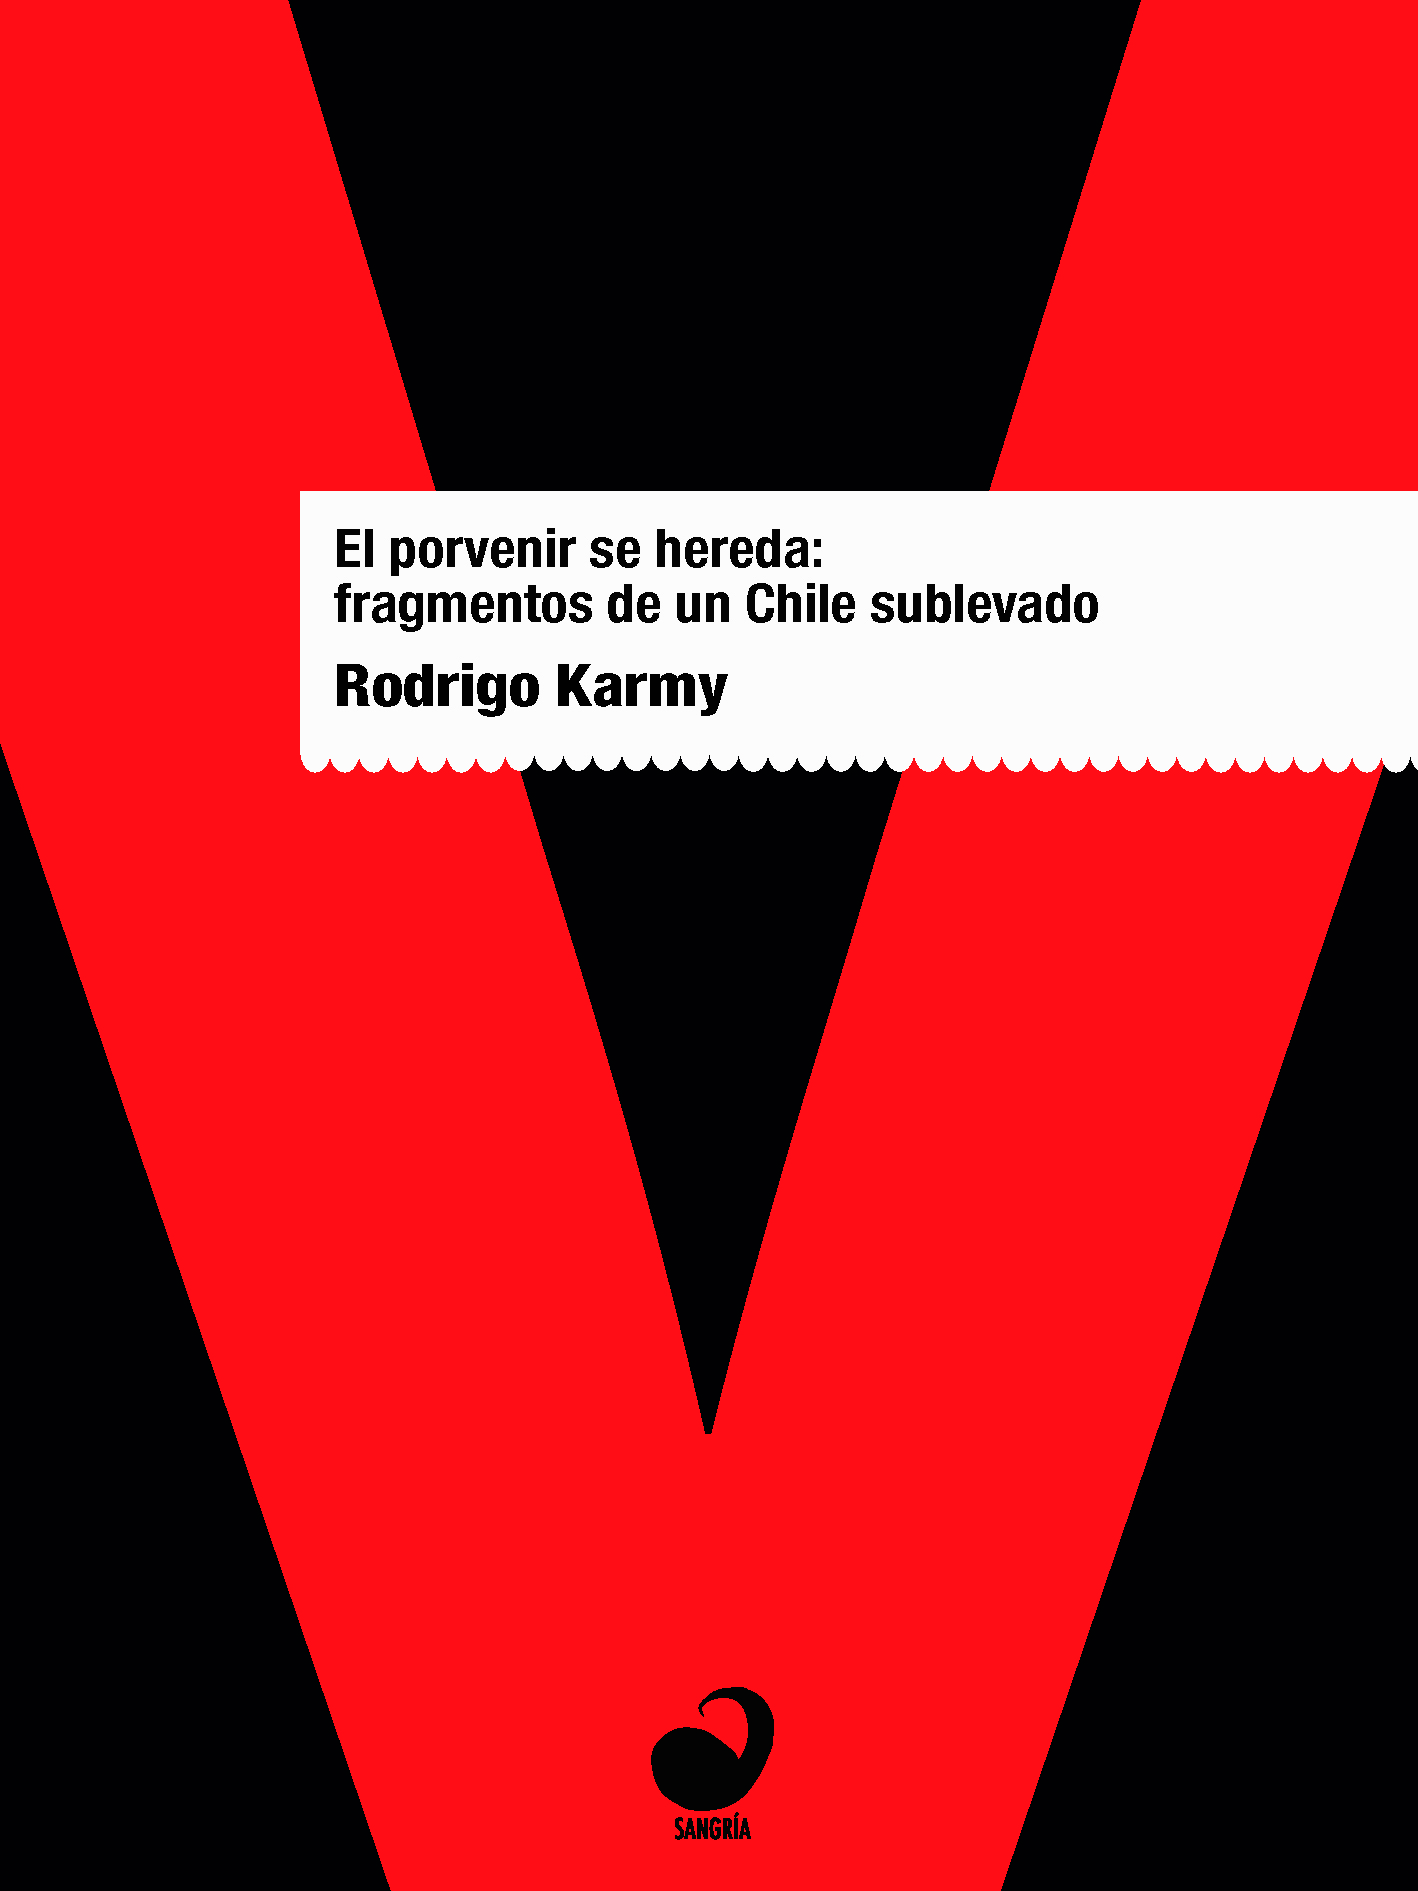 El porvenir se hereda - Portada - Rodrigo Karmy y Sangría Editora